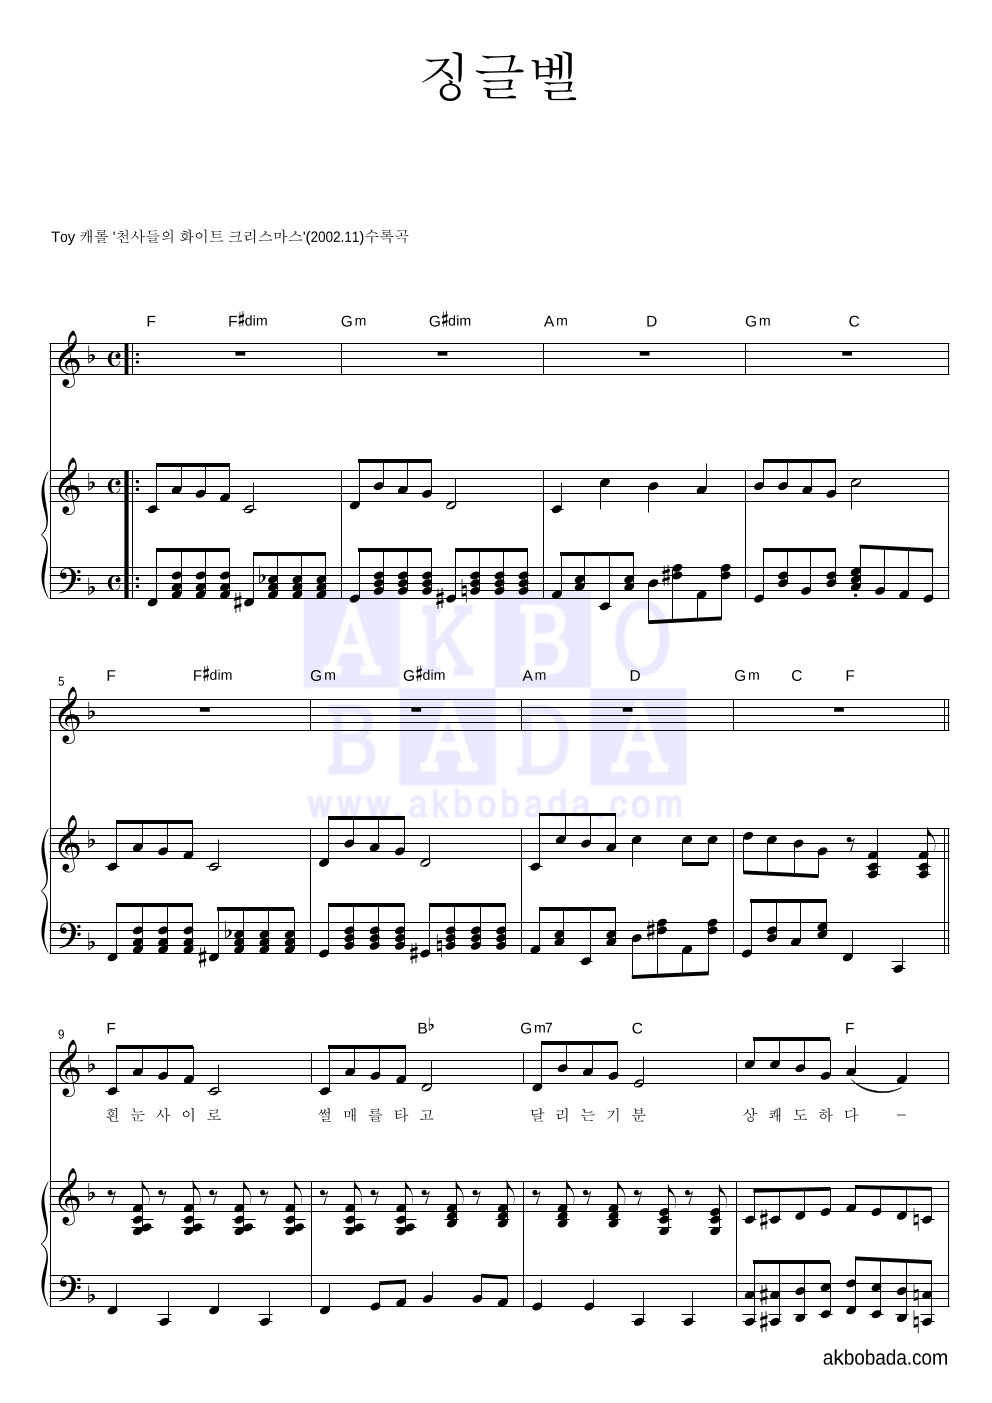 크리스마스 캐롤 - 징글벨 (흰눈사이로) 피아노 3단 악보 